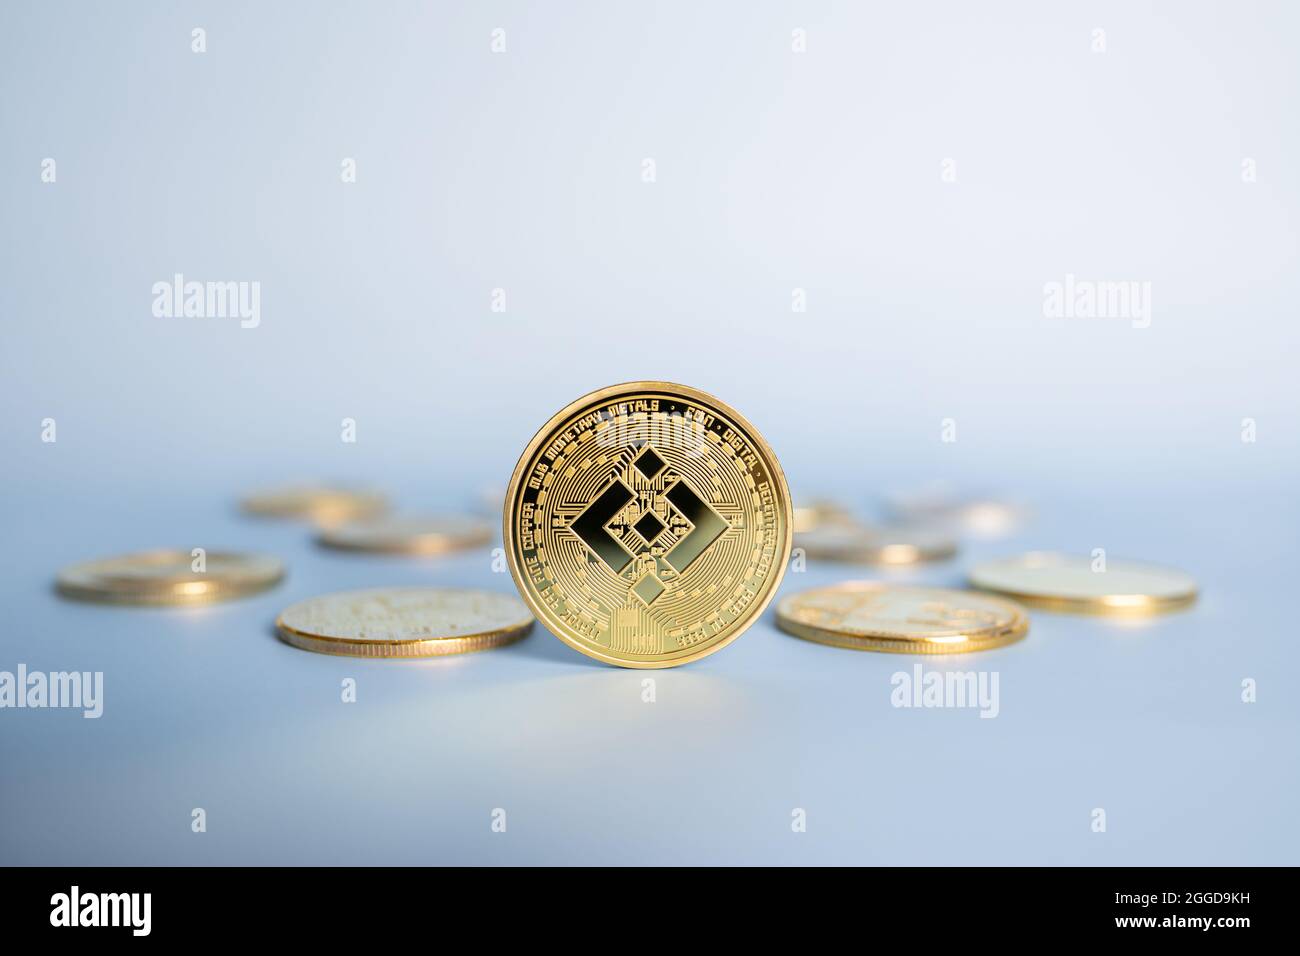 Binance BNB Cryptocurrency moneta in piedi in posizione centrale tra mazzo di cripto monete d'oro su sfondo blu. Primo piano, messa a fuoco morbida. Foto Stock